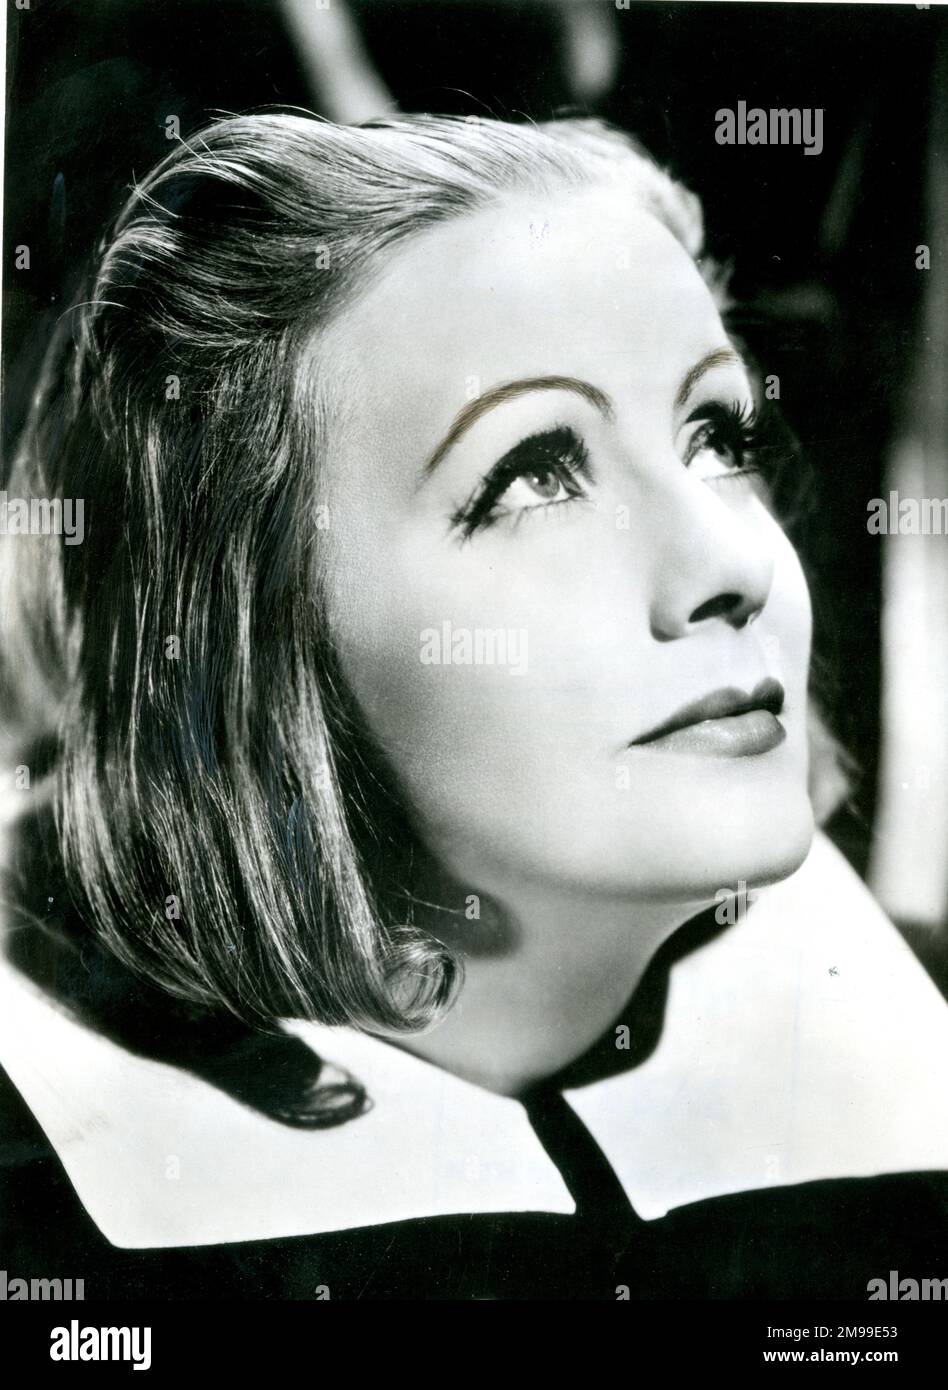 Greta Garbo (Greta Lovisa Gustafsson, 1905-1990), schwedisch-amerikanische Filmschauspielerin. Hier in der Titelrolle von Königin Christina. Stockfoto